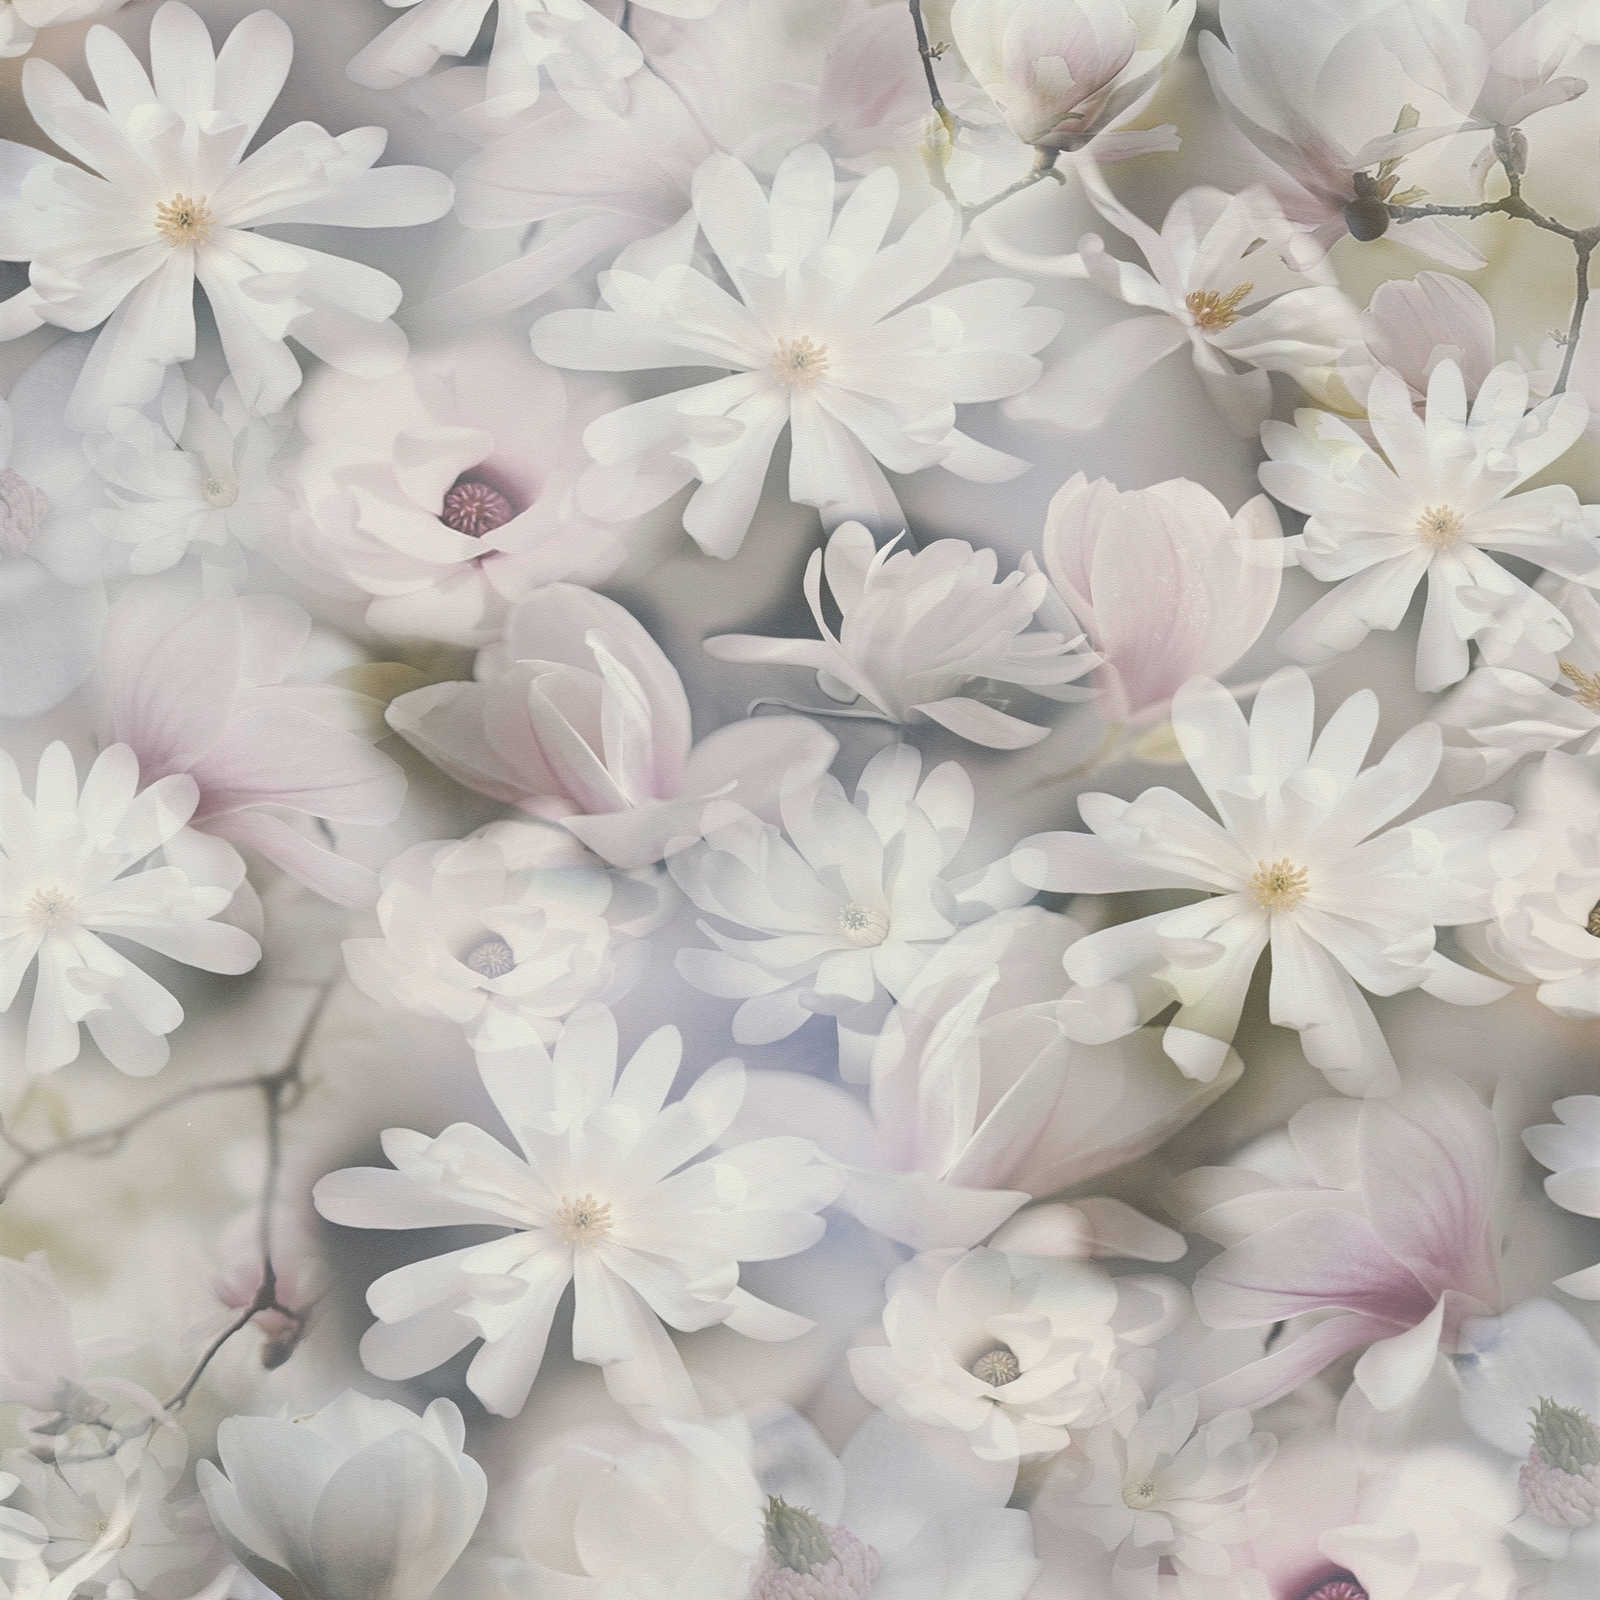 Tapete Blumen Collage in hellen Farben – Grau, Weiß
